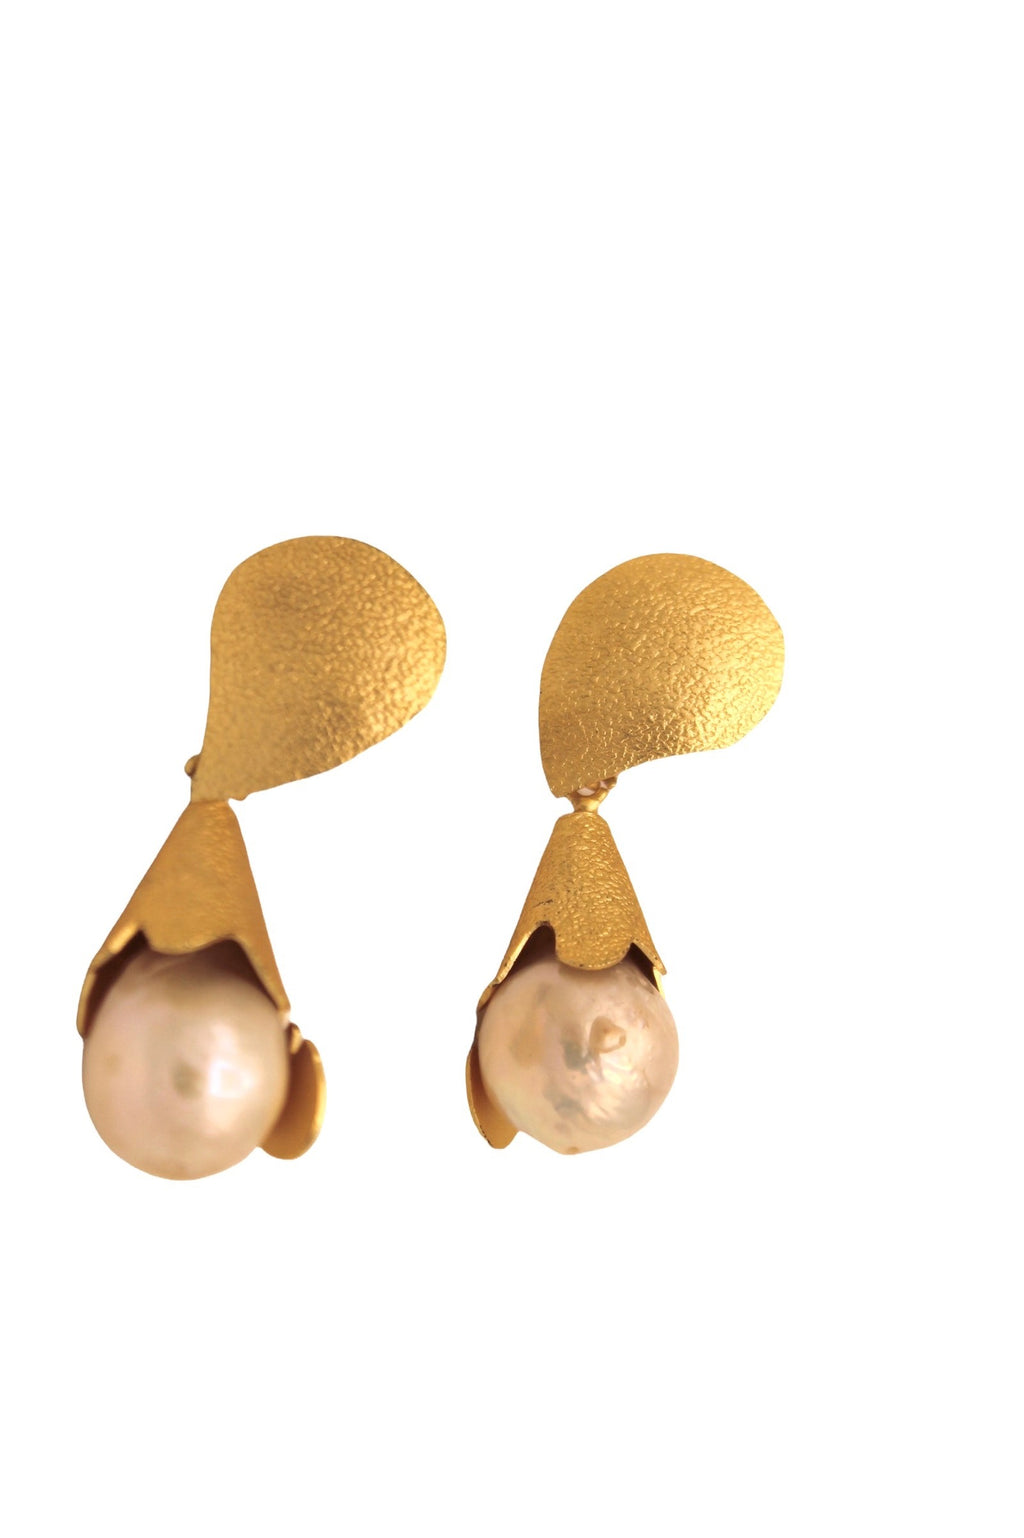 Number 4001: Azalea earrings